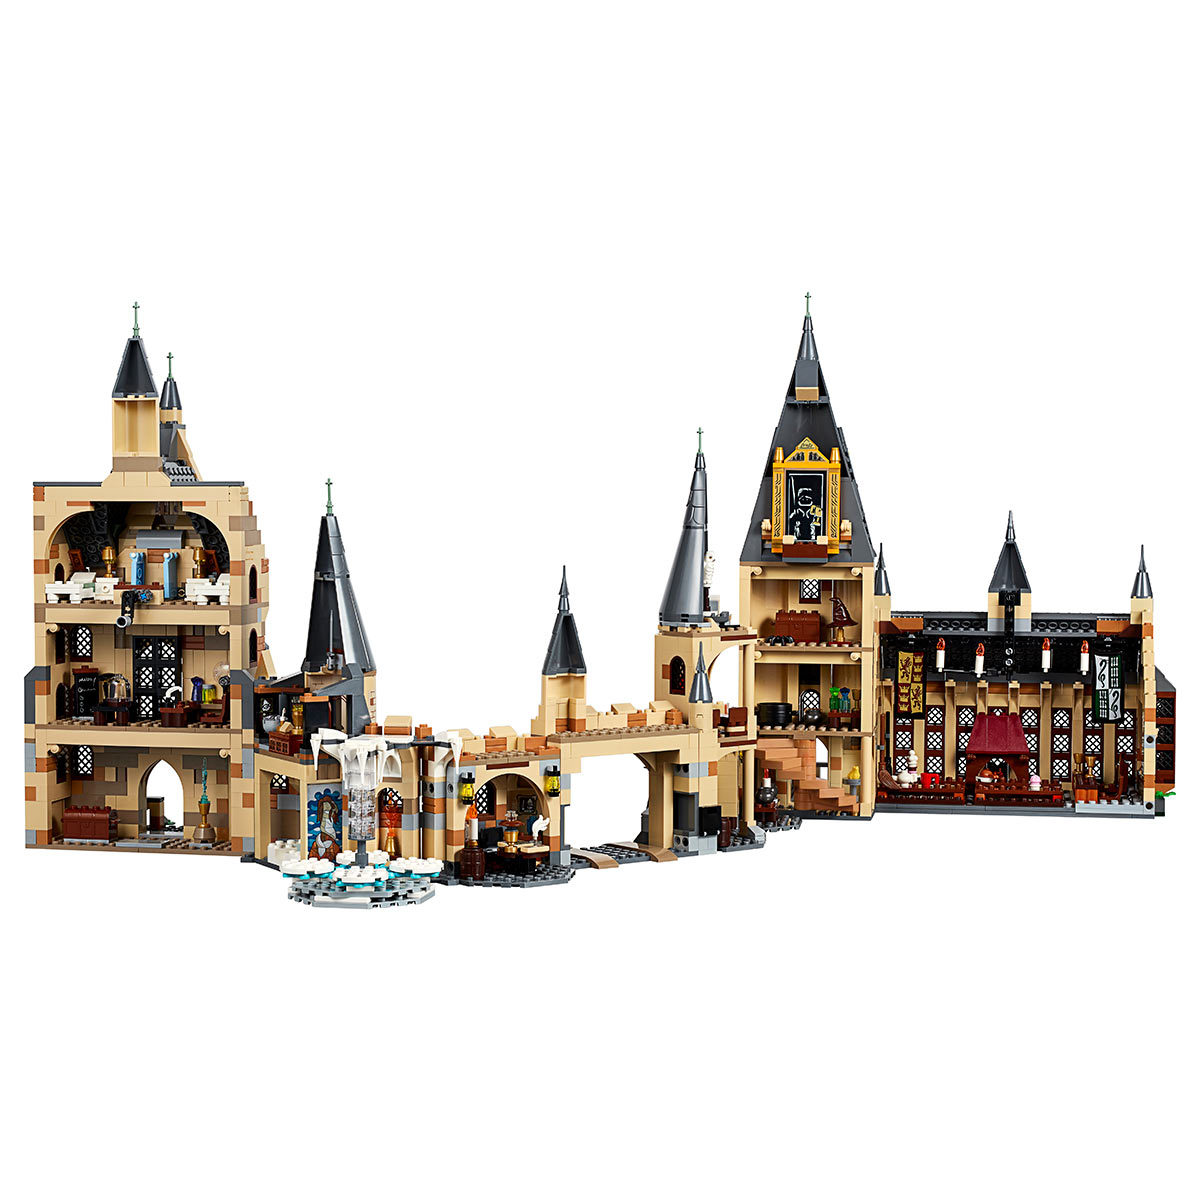 Lego Hogwarts Clock Tower set on white background